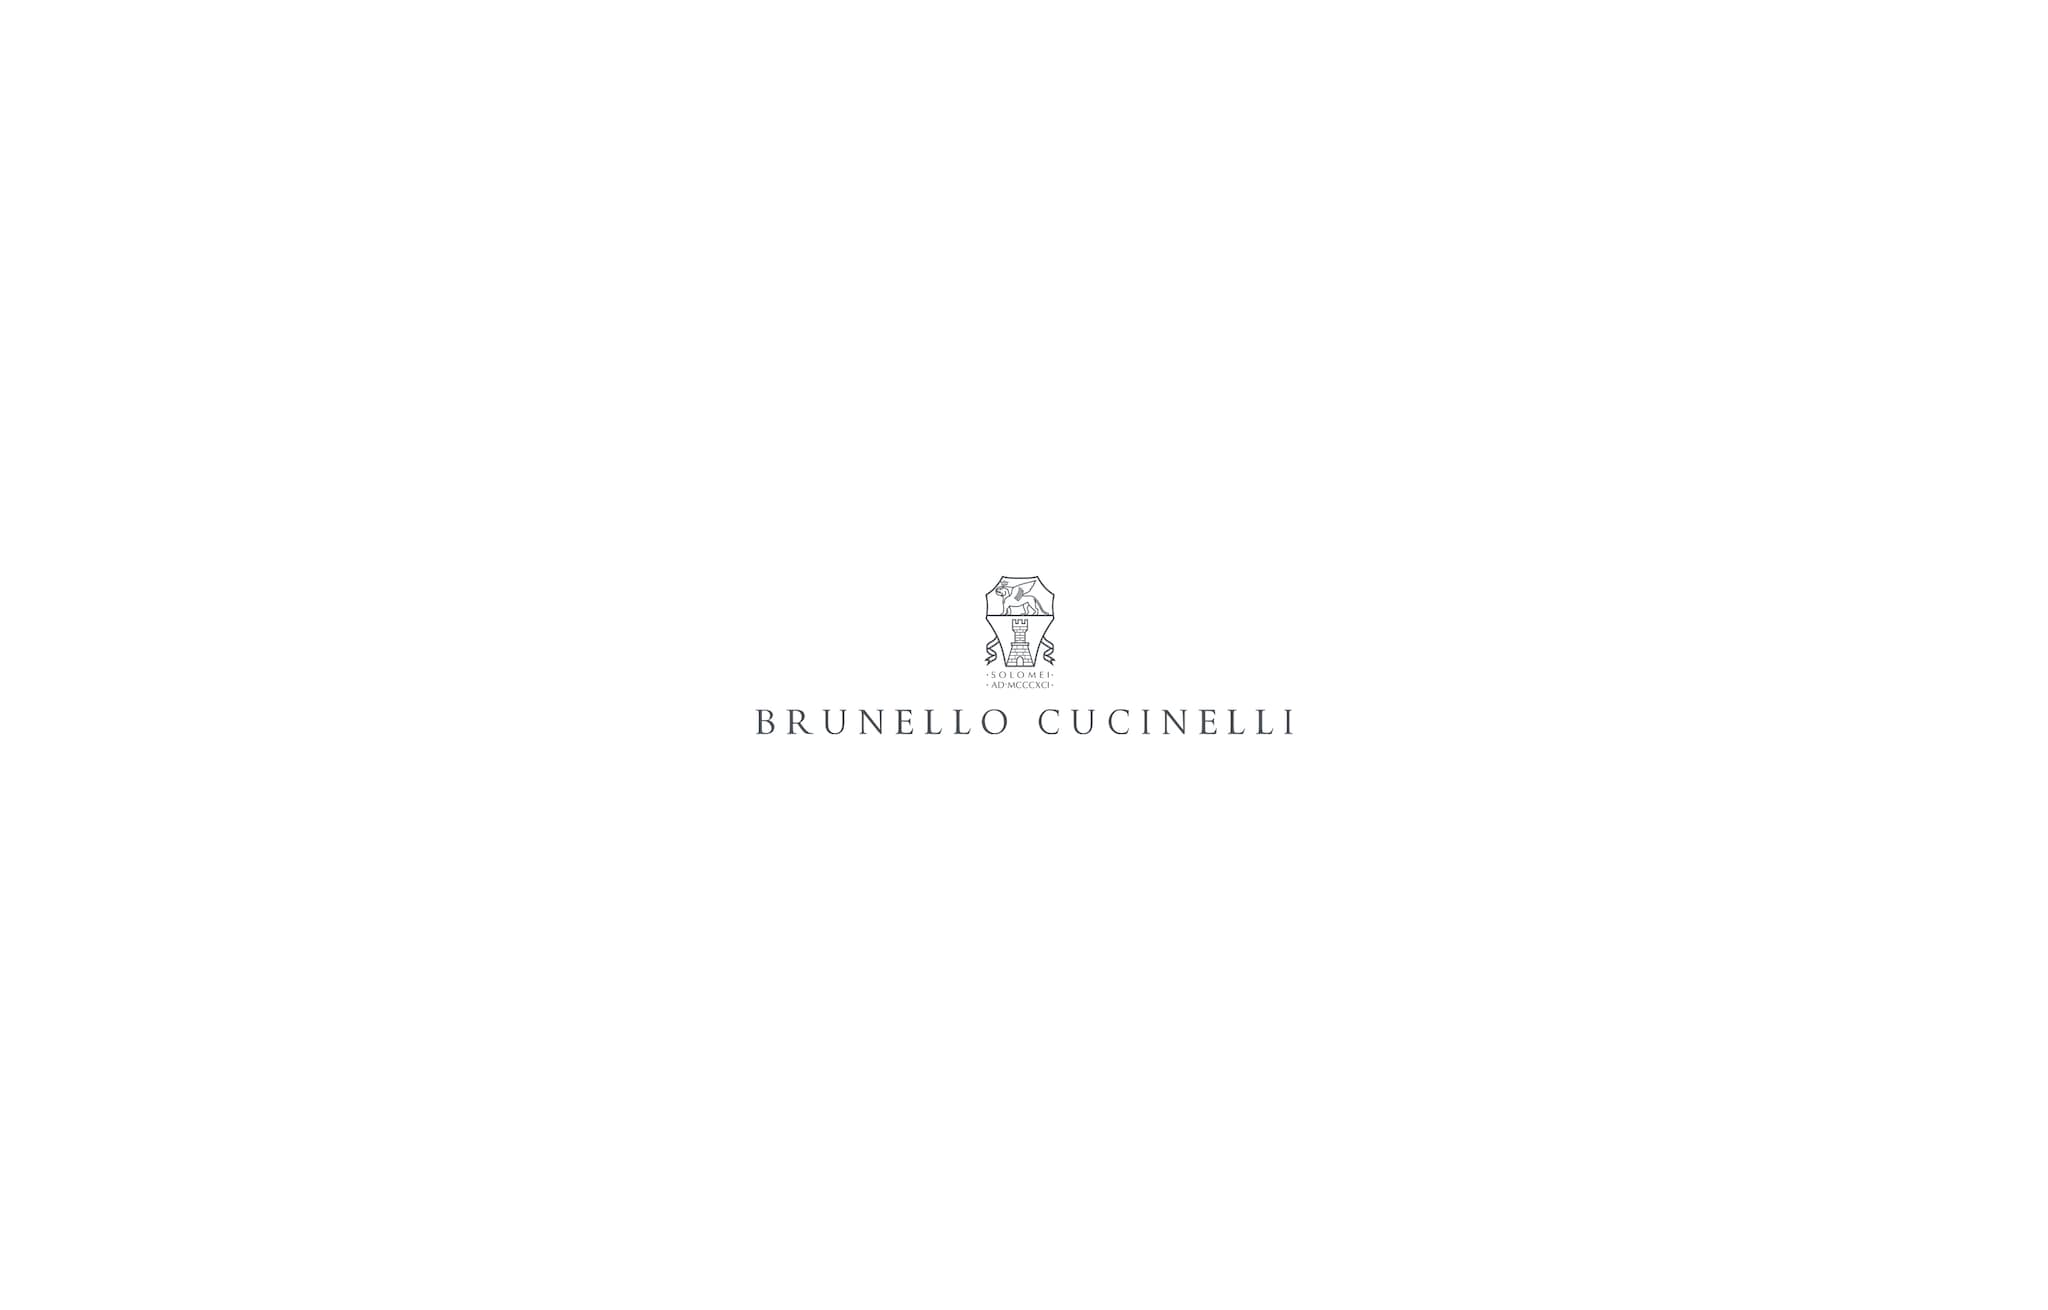  ハウンドトゥース アンコンジャケット グレー メンズ - Brunello Cucinelli 